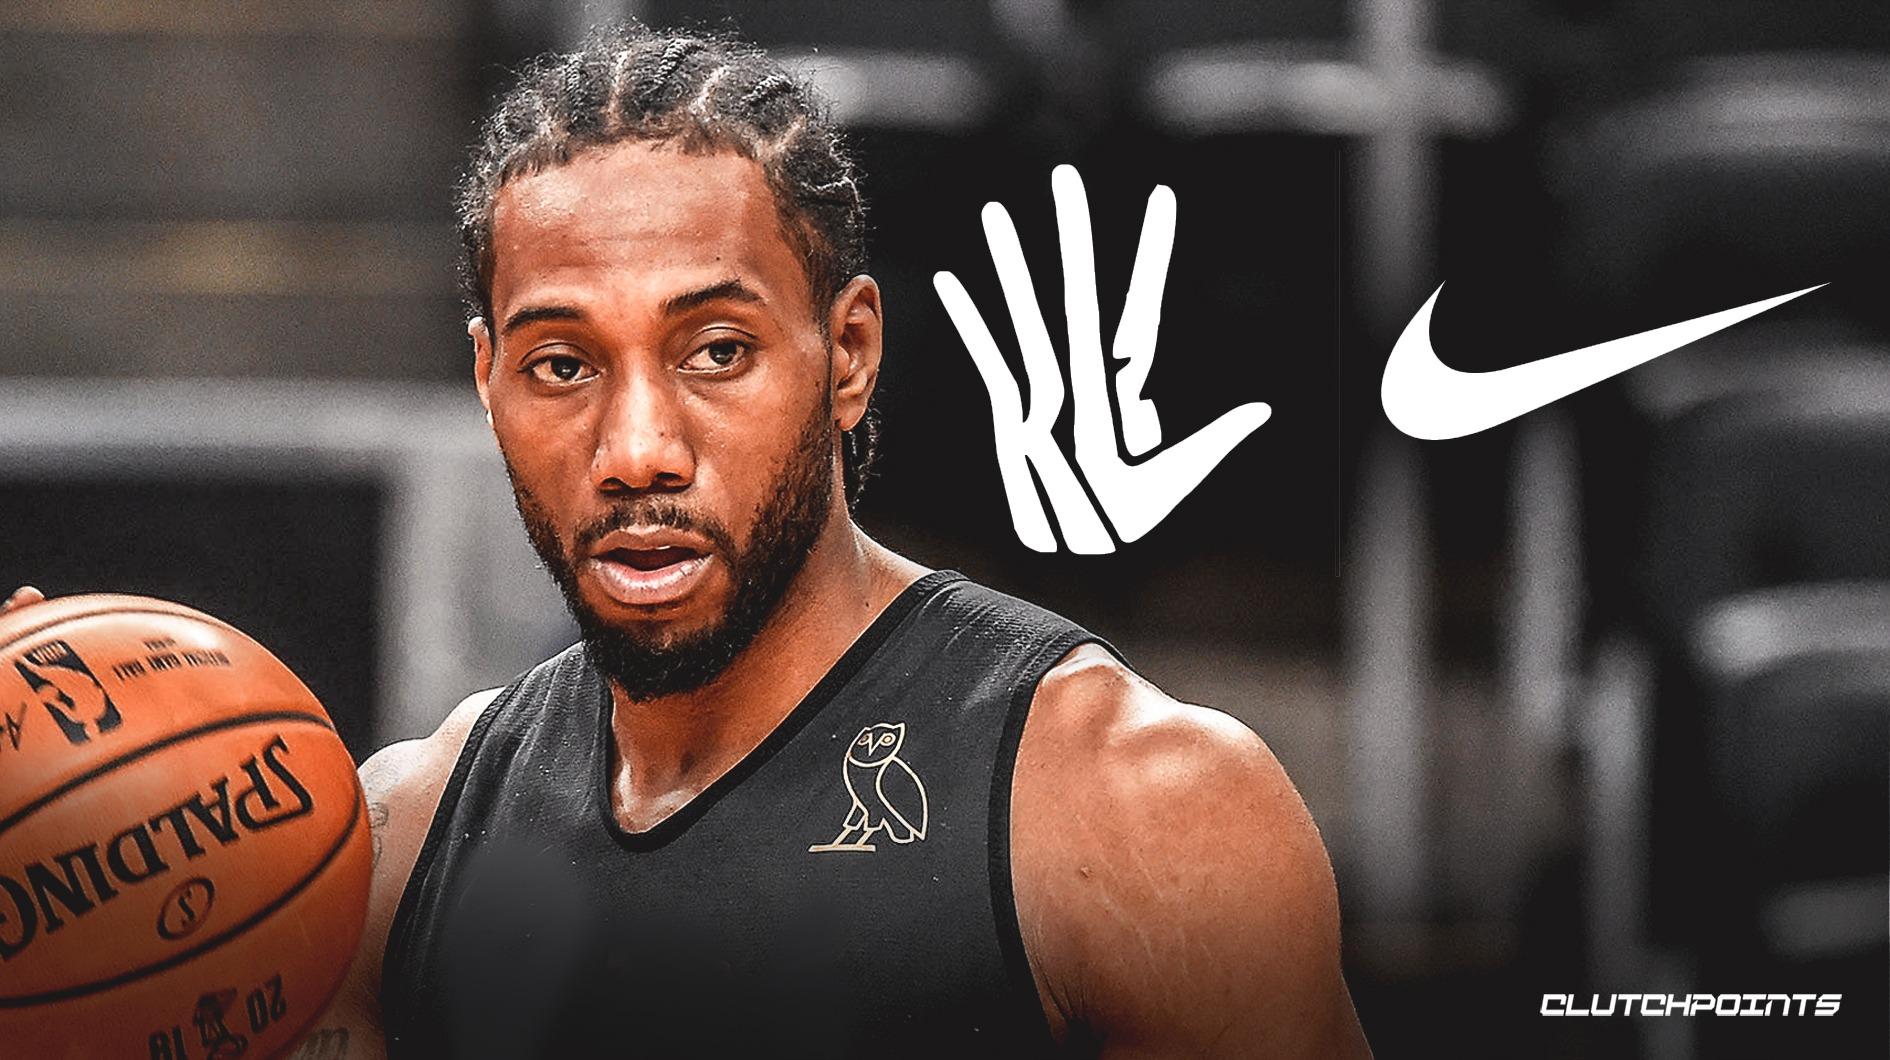 Klaw Logo - Clippers news: Nike fires back at Kawhi Leonard over Klaw logo